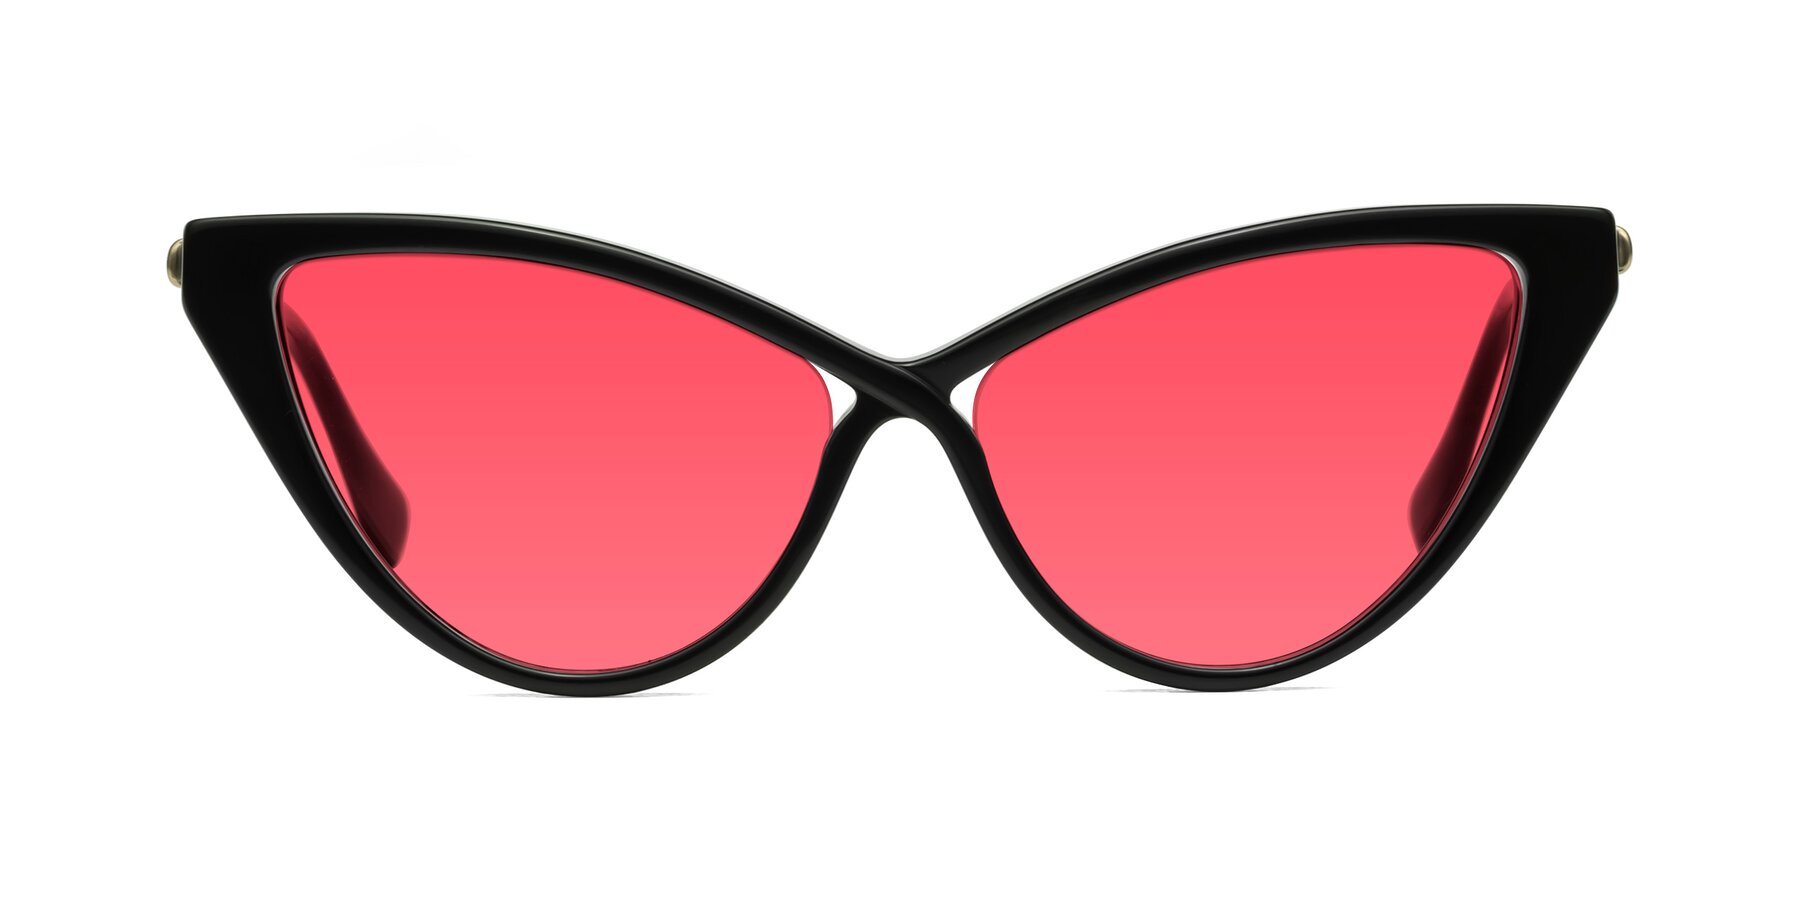 Lucasta - Black Sunglasses